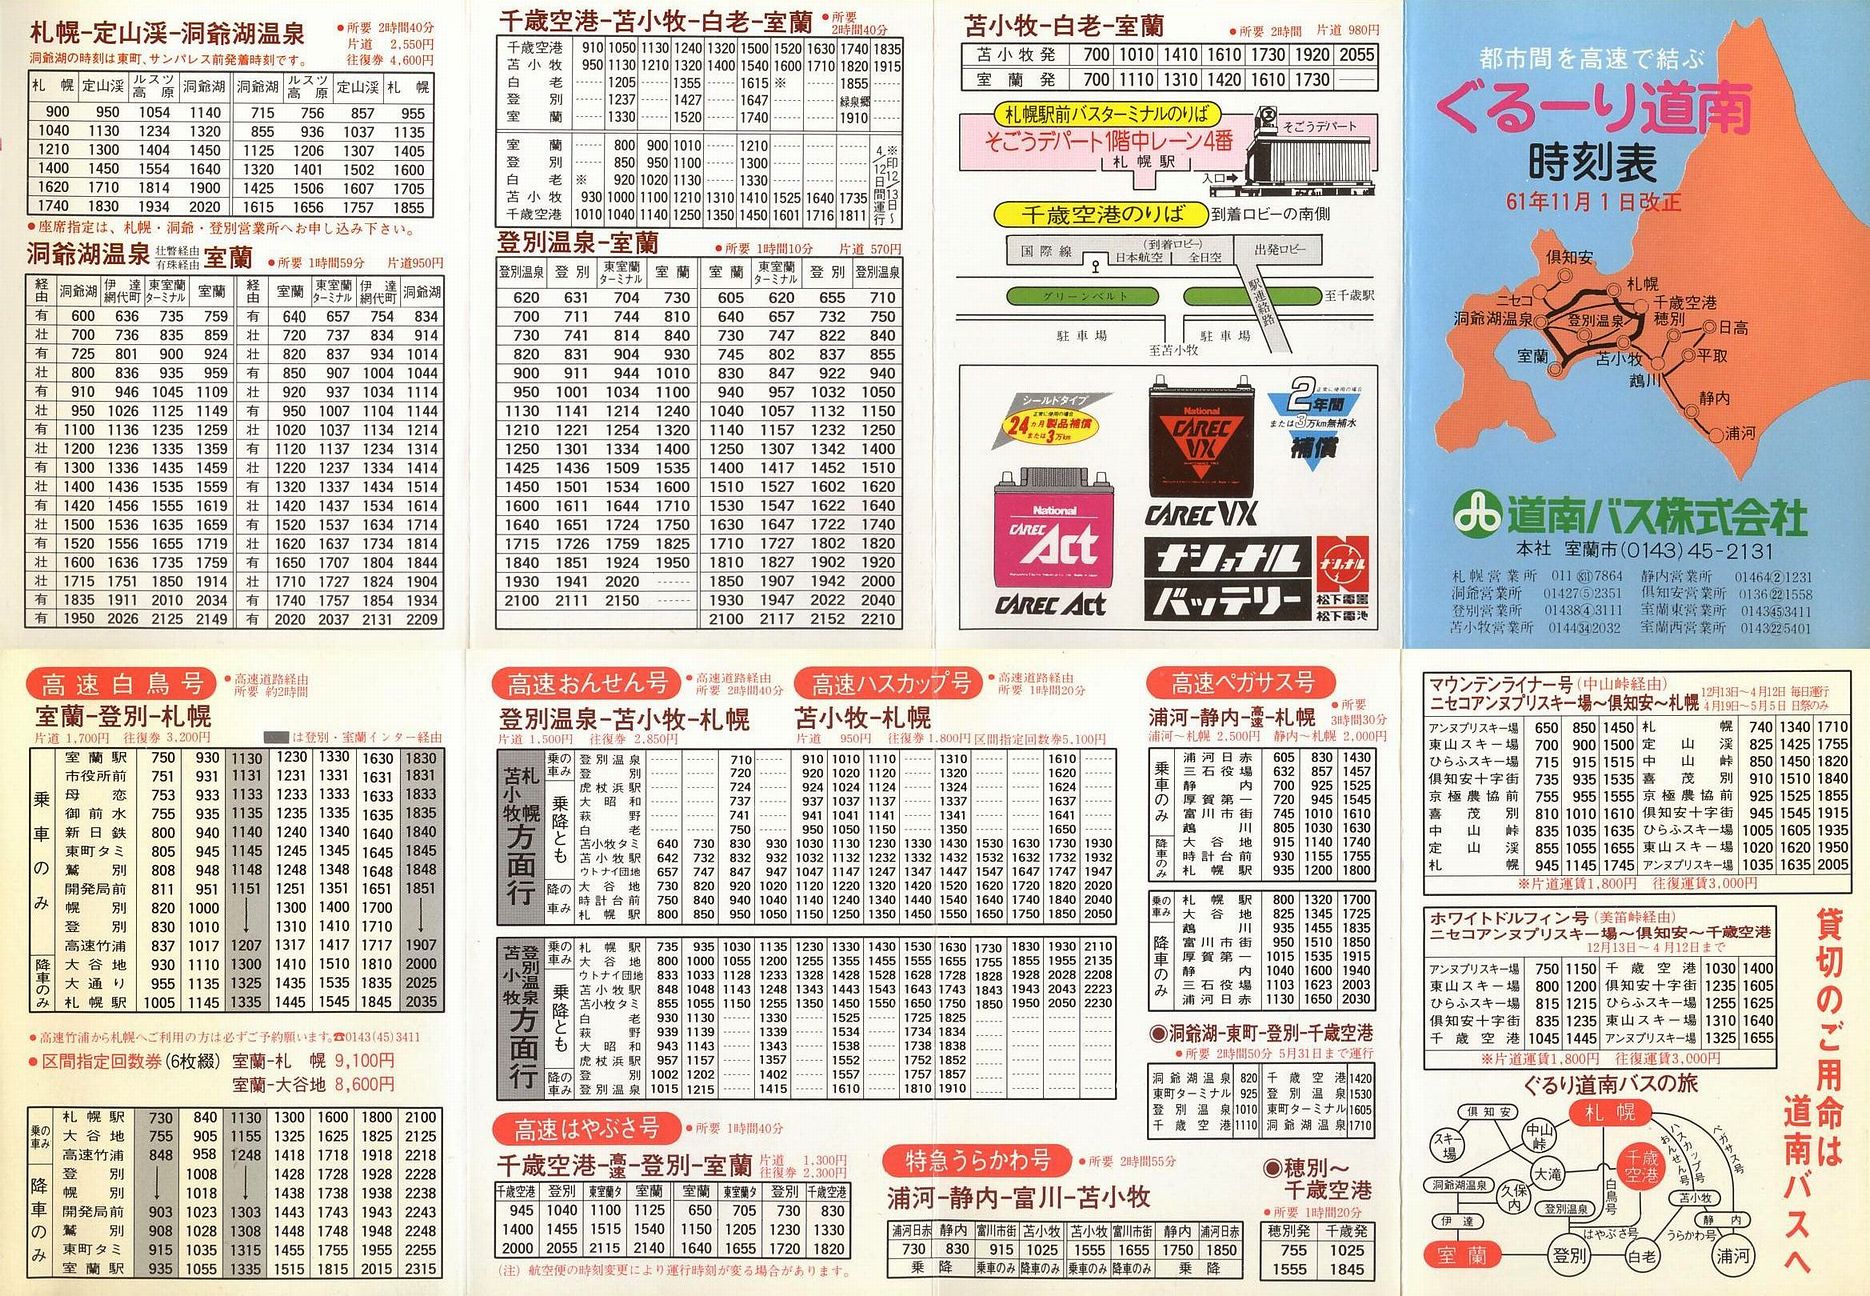 1986-11-01改正_道南バス_ぐるーり道南時刻表